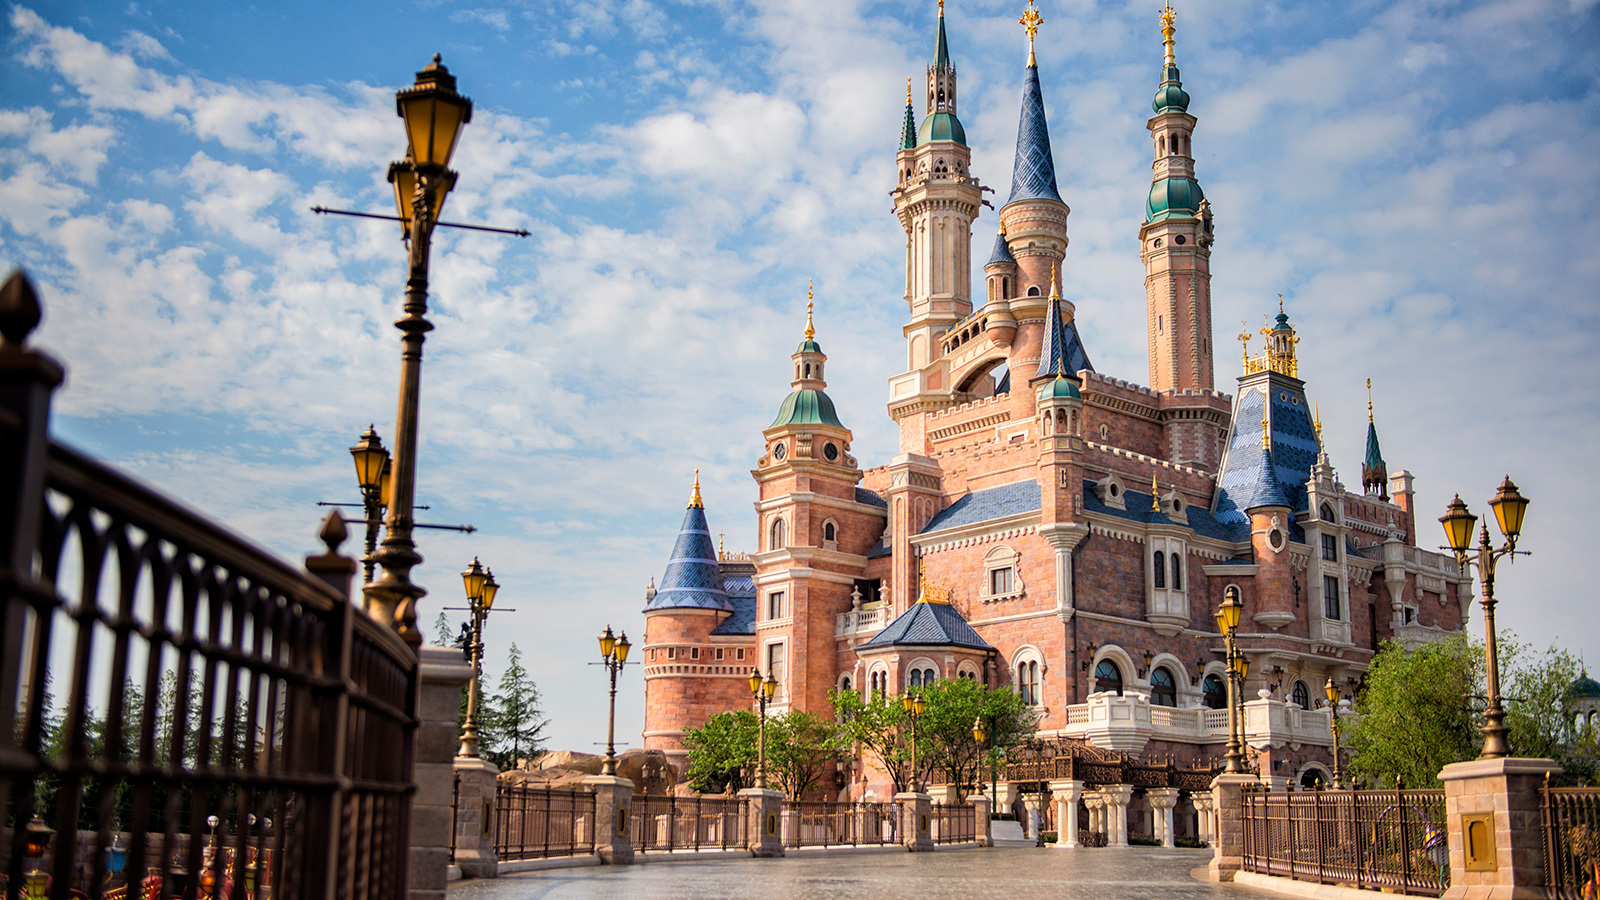 Shanghai Disney Resort Launches New Shanghai Disneyland Annual Pass for Year-Round Magic